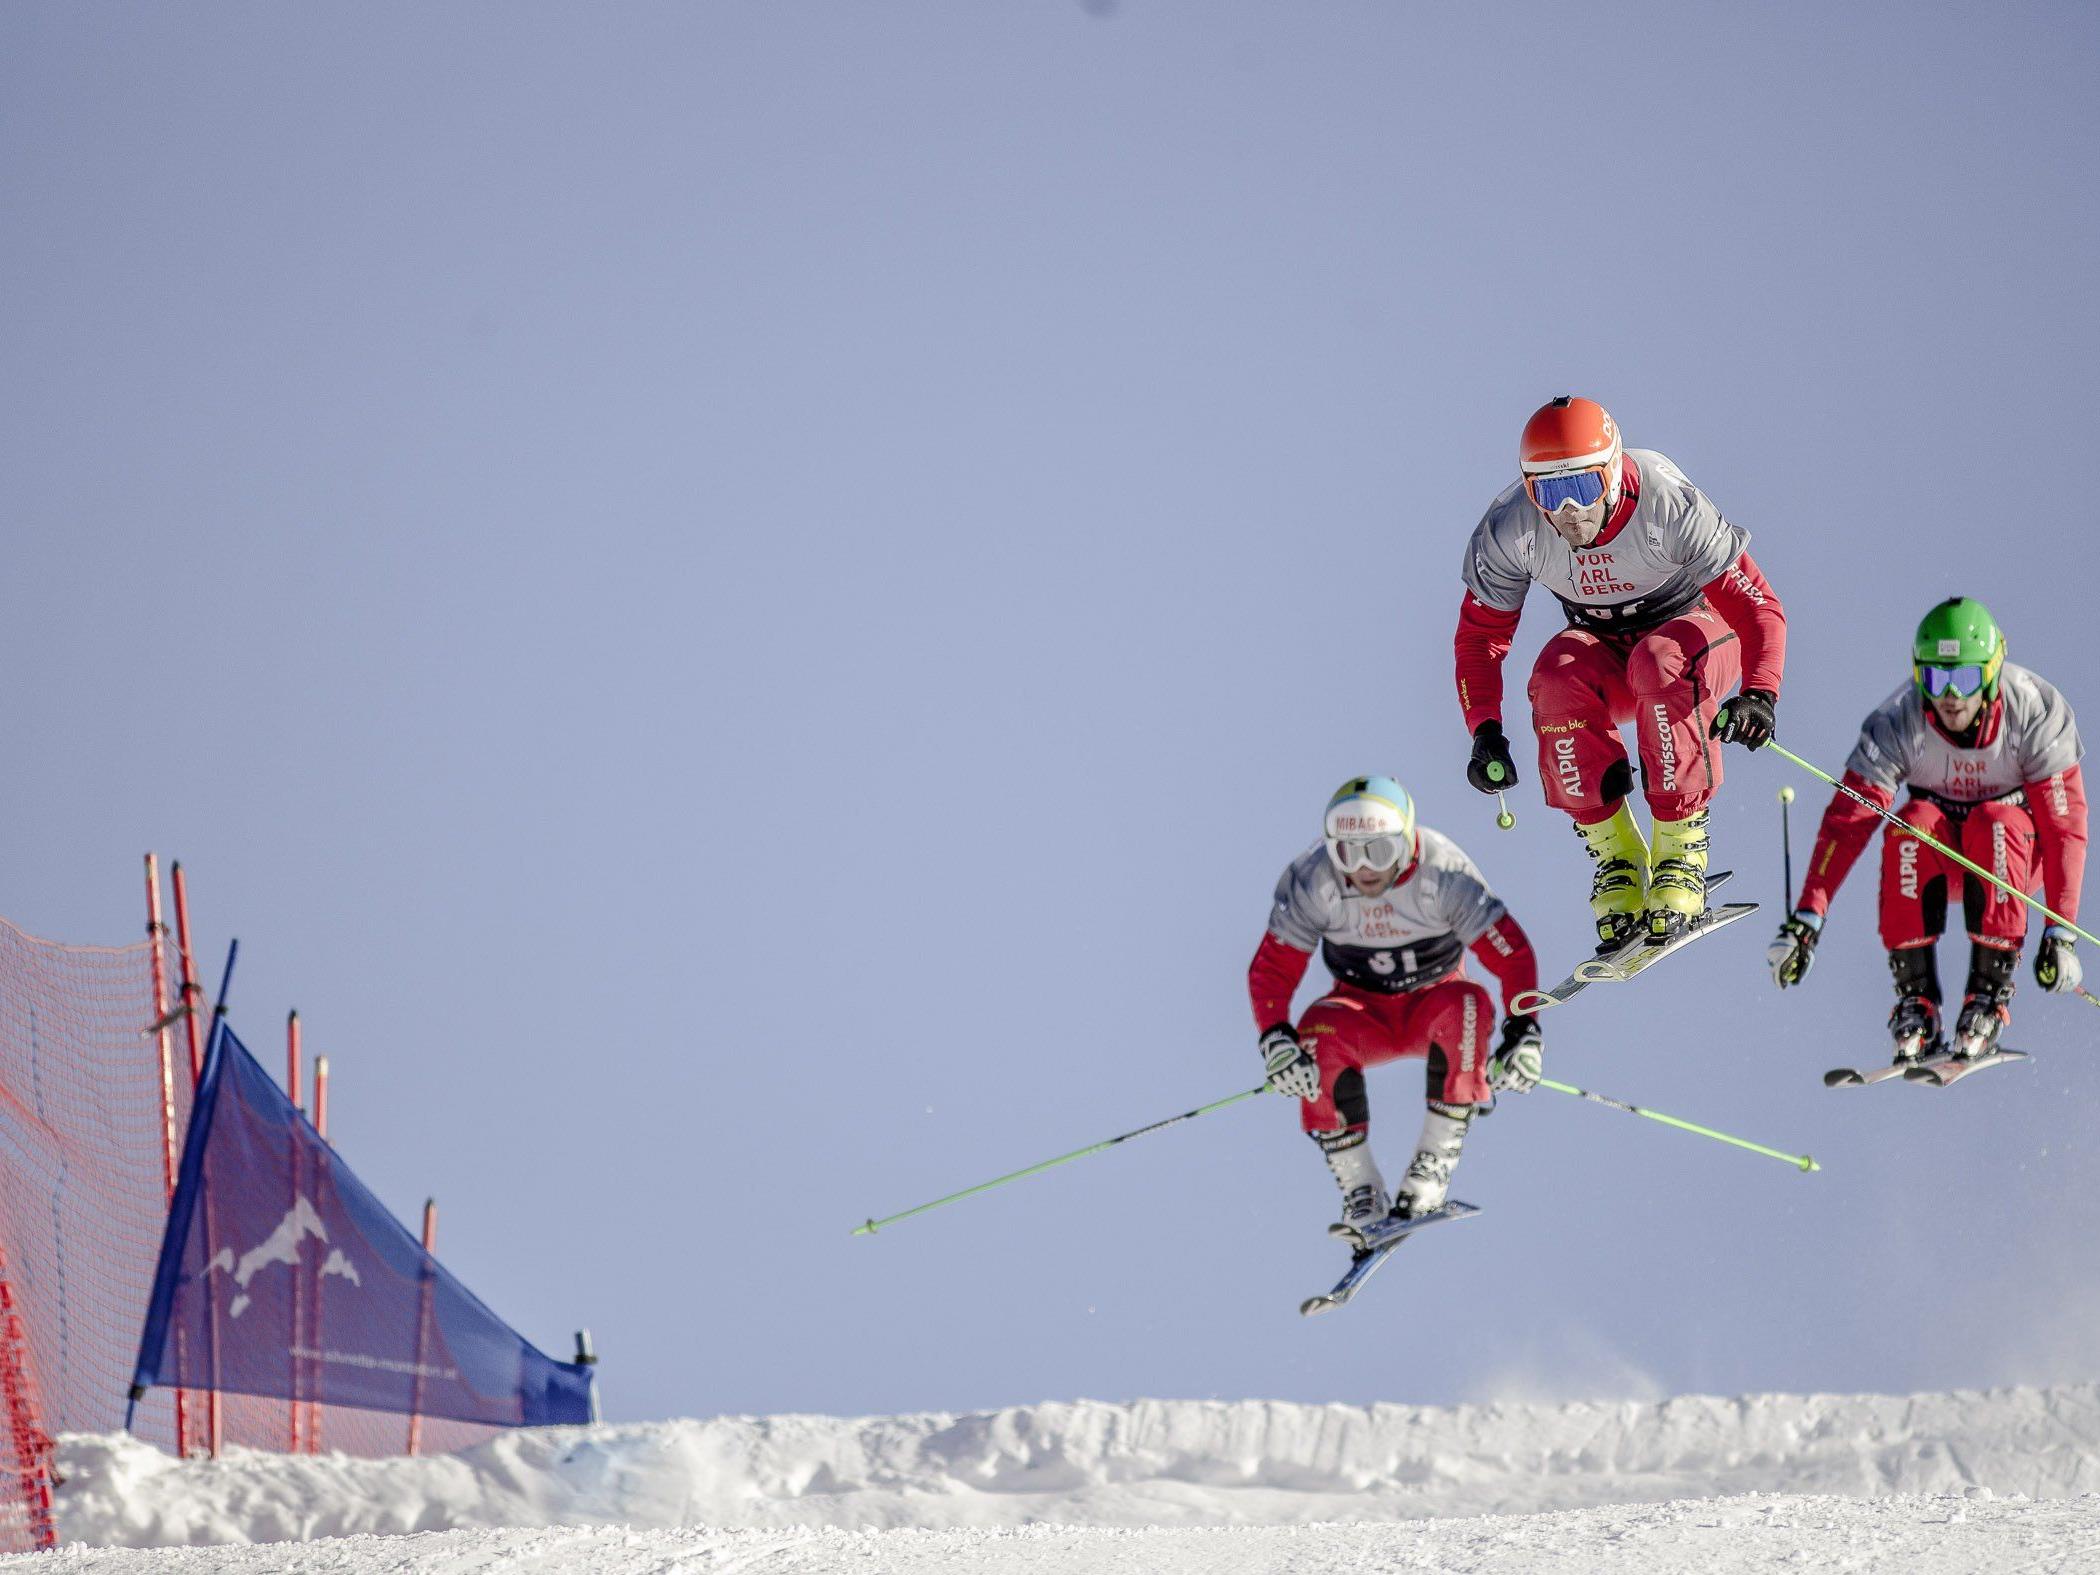 Beim AUDI FIS Skicross Weltcup erwartet die Zuschauer spektakuläre Fights.